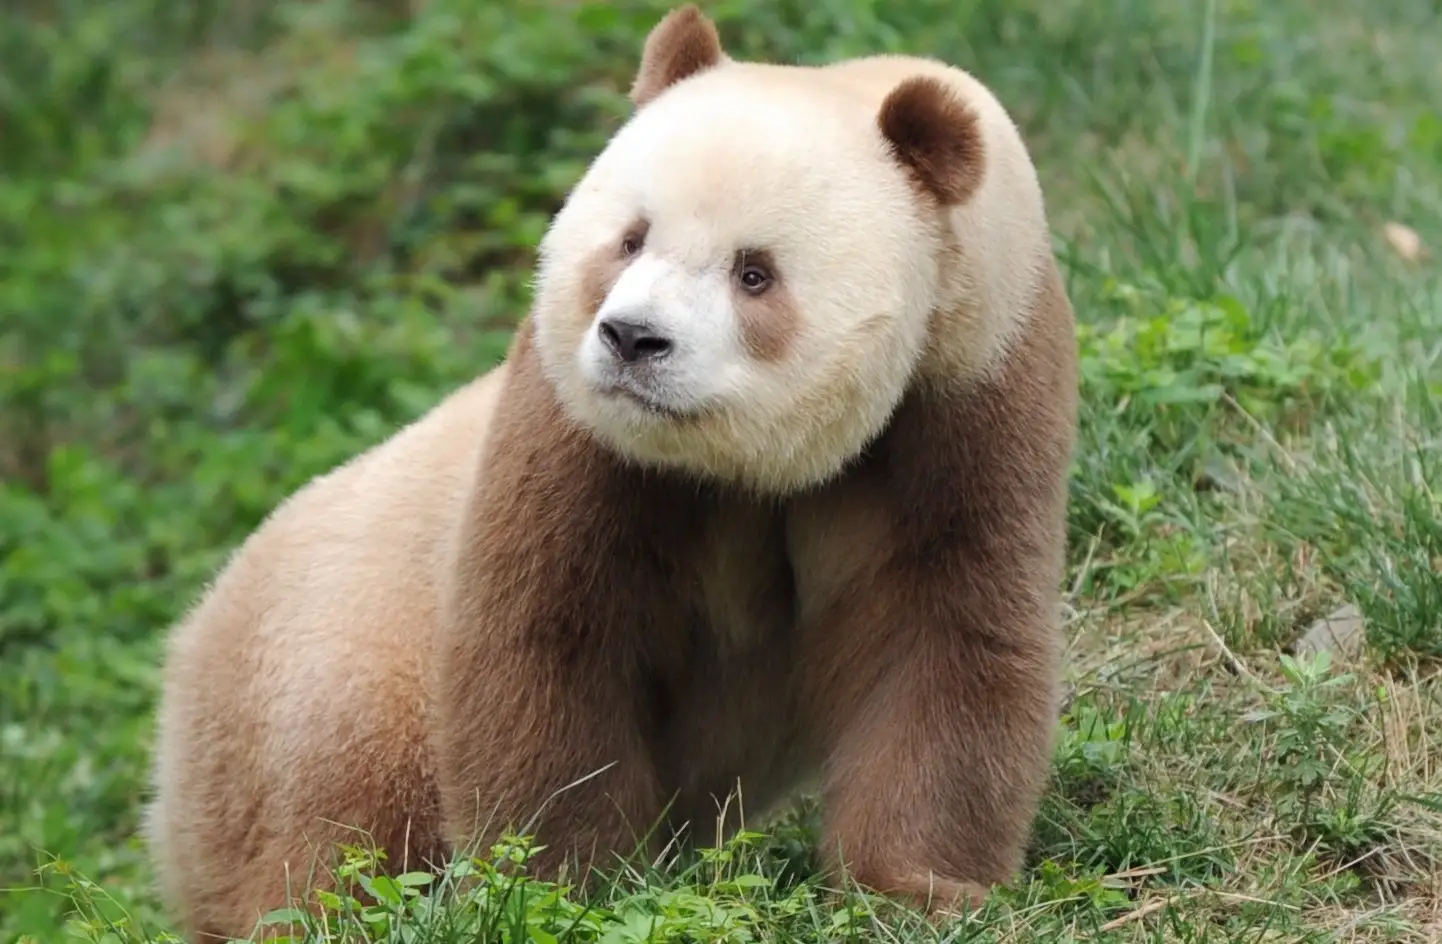 Existen osos pandas cafés por una mutación genética, revela estudio